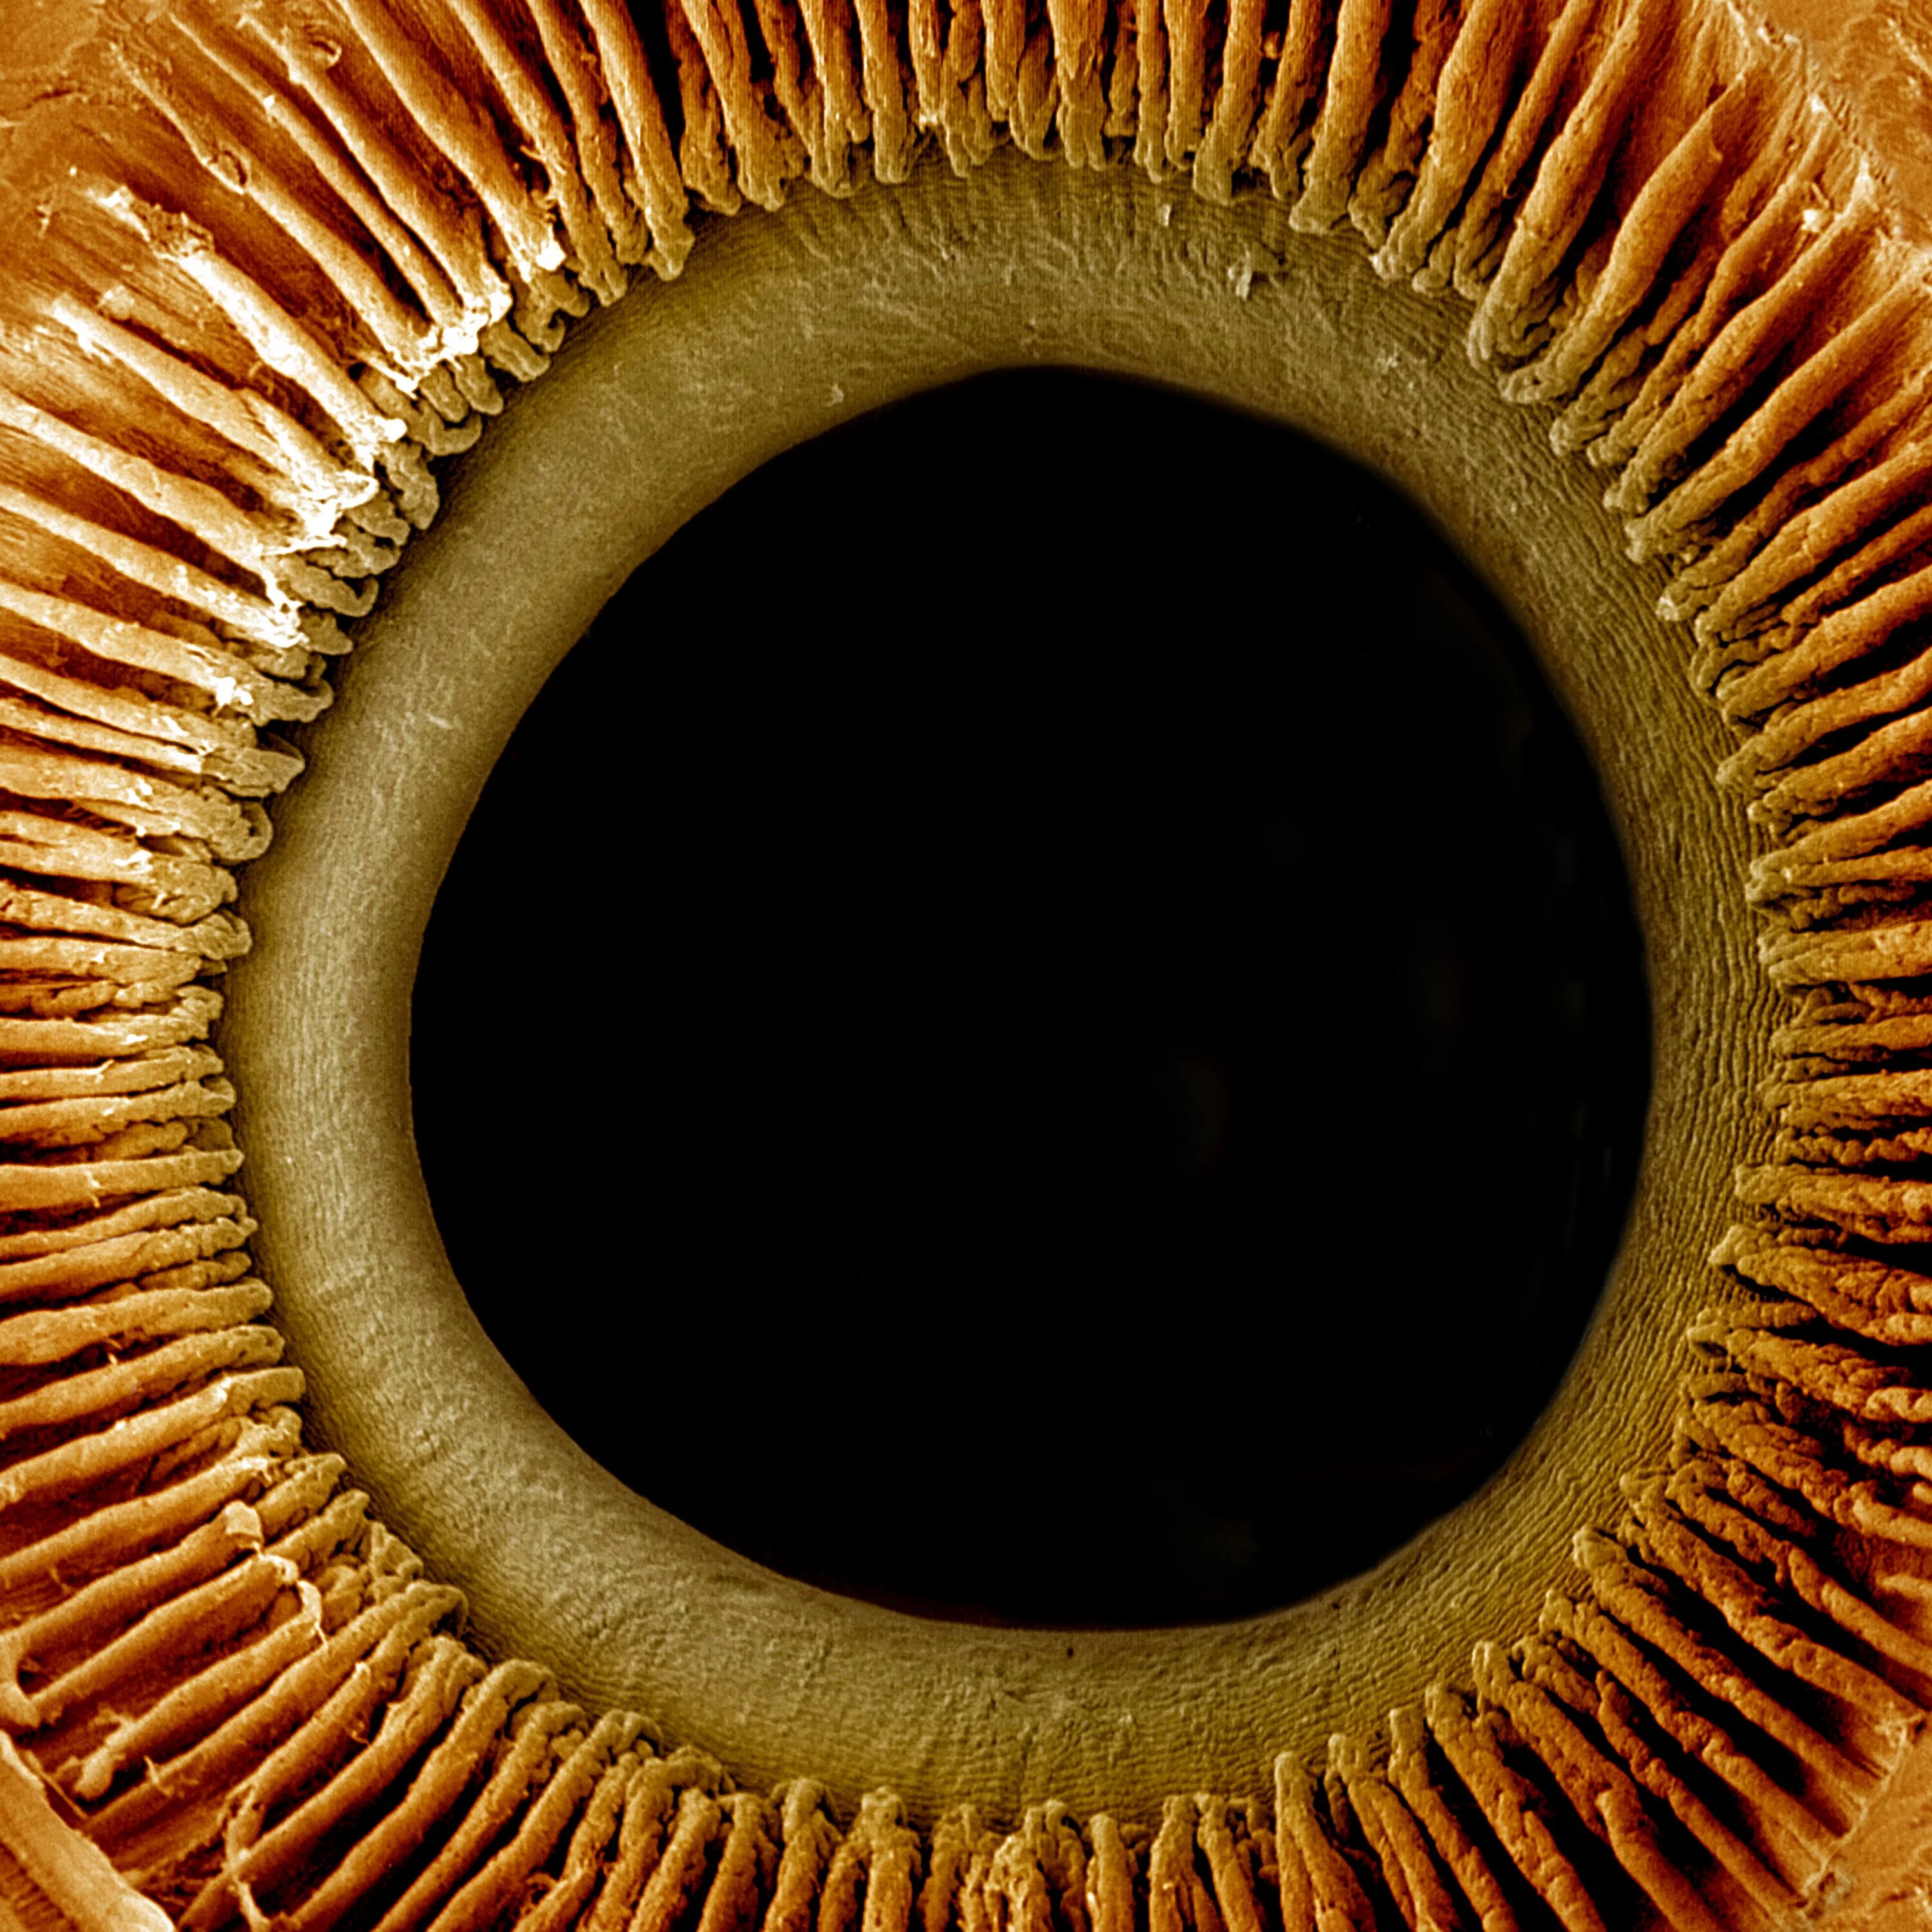 Радужная оболочка это. Глаз под микроскопом. Человеческий глаз под микроскопом. Радужная оболочка глаза под микроскопом. Глаз в микроскопе.